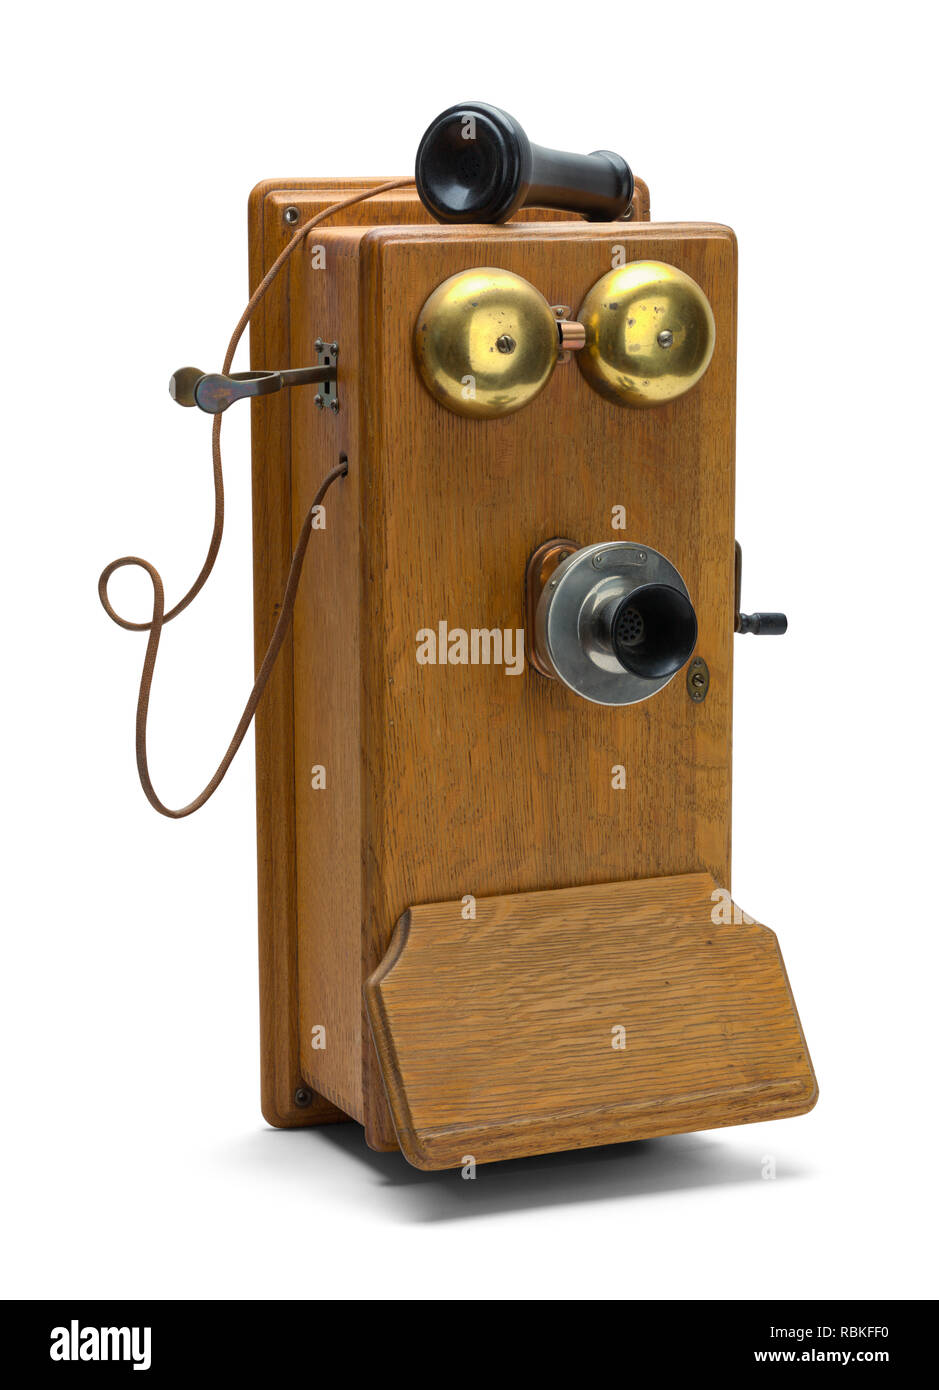 Teléfono fijo antiguo de disco para oficina o casa Stock Photo